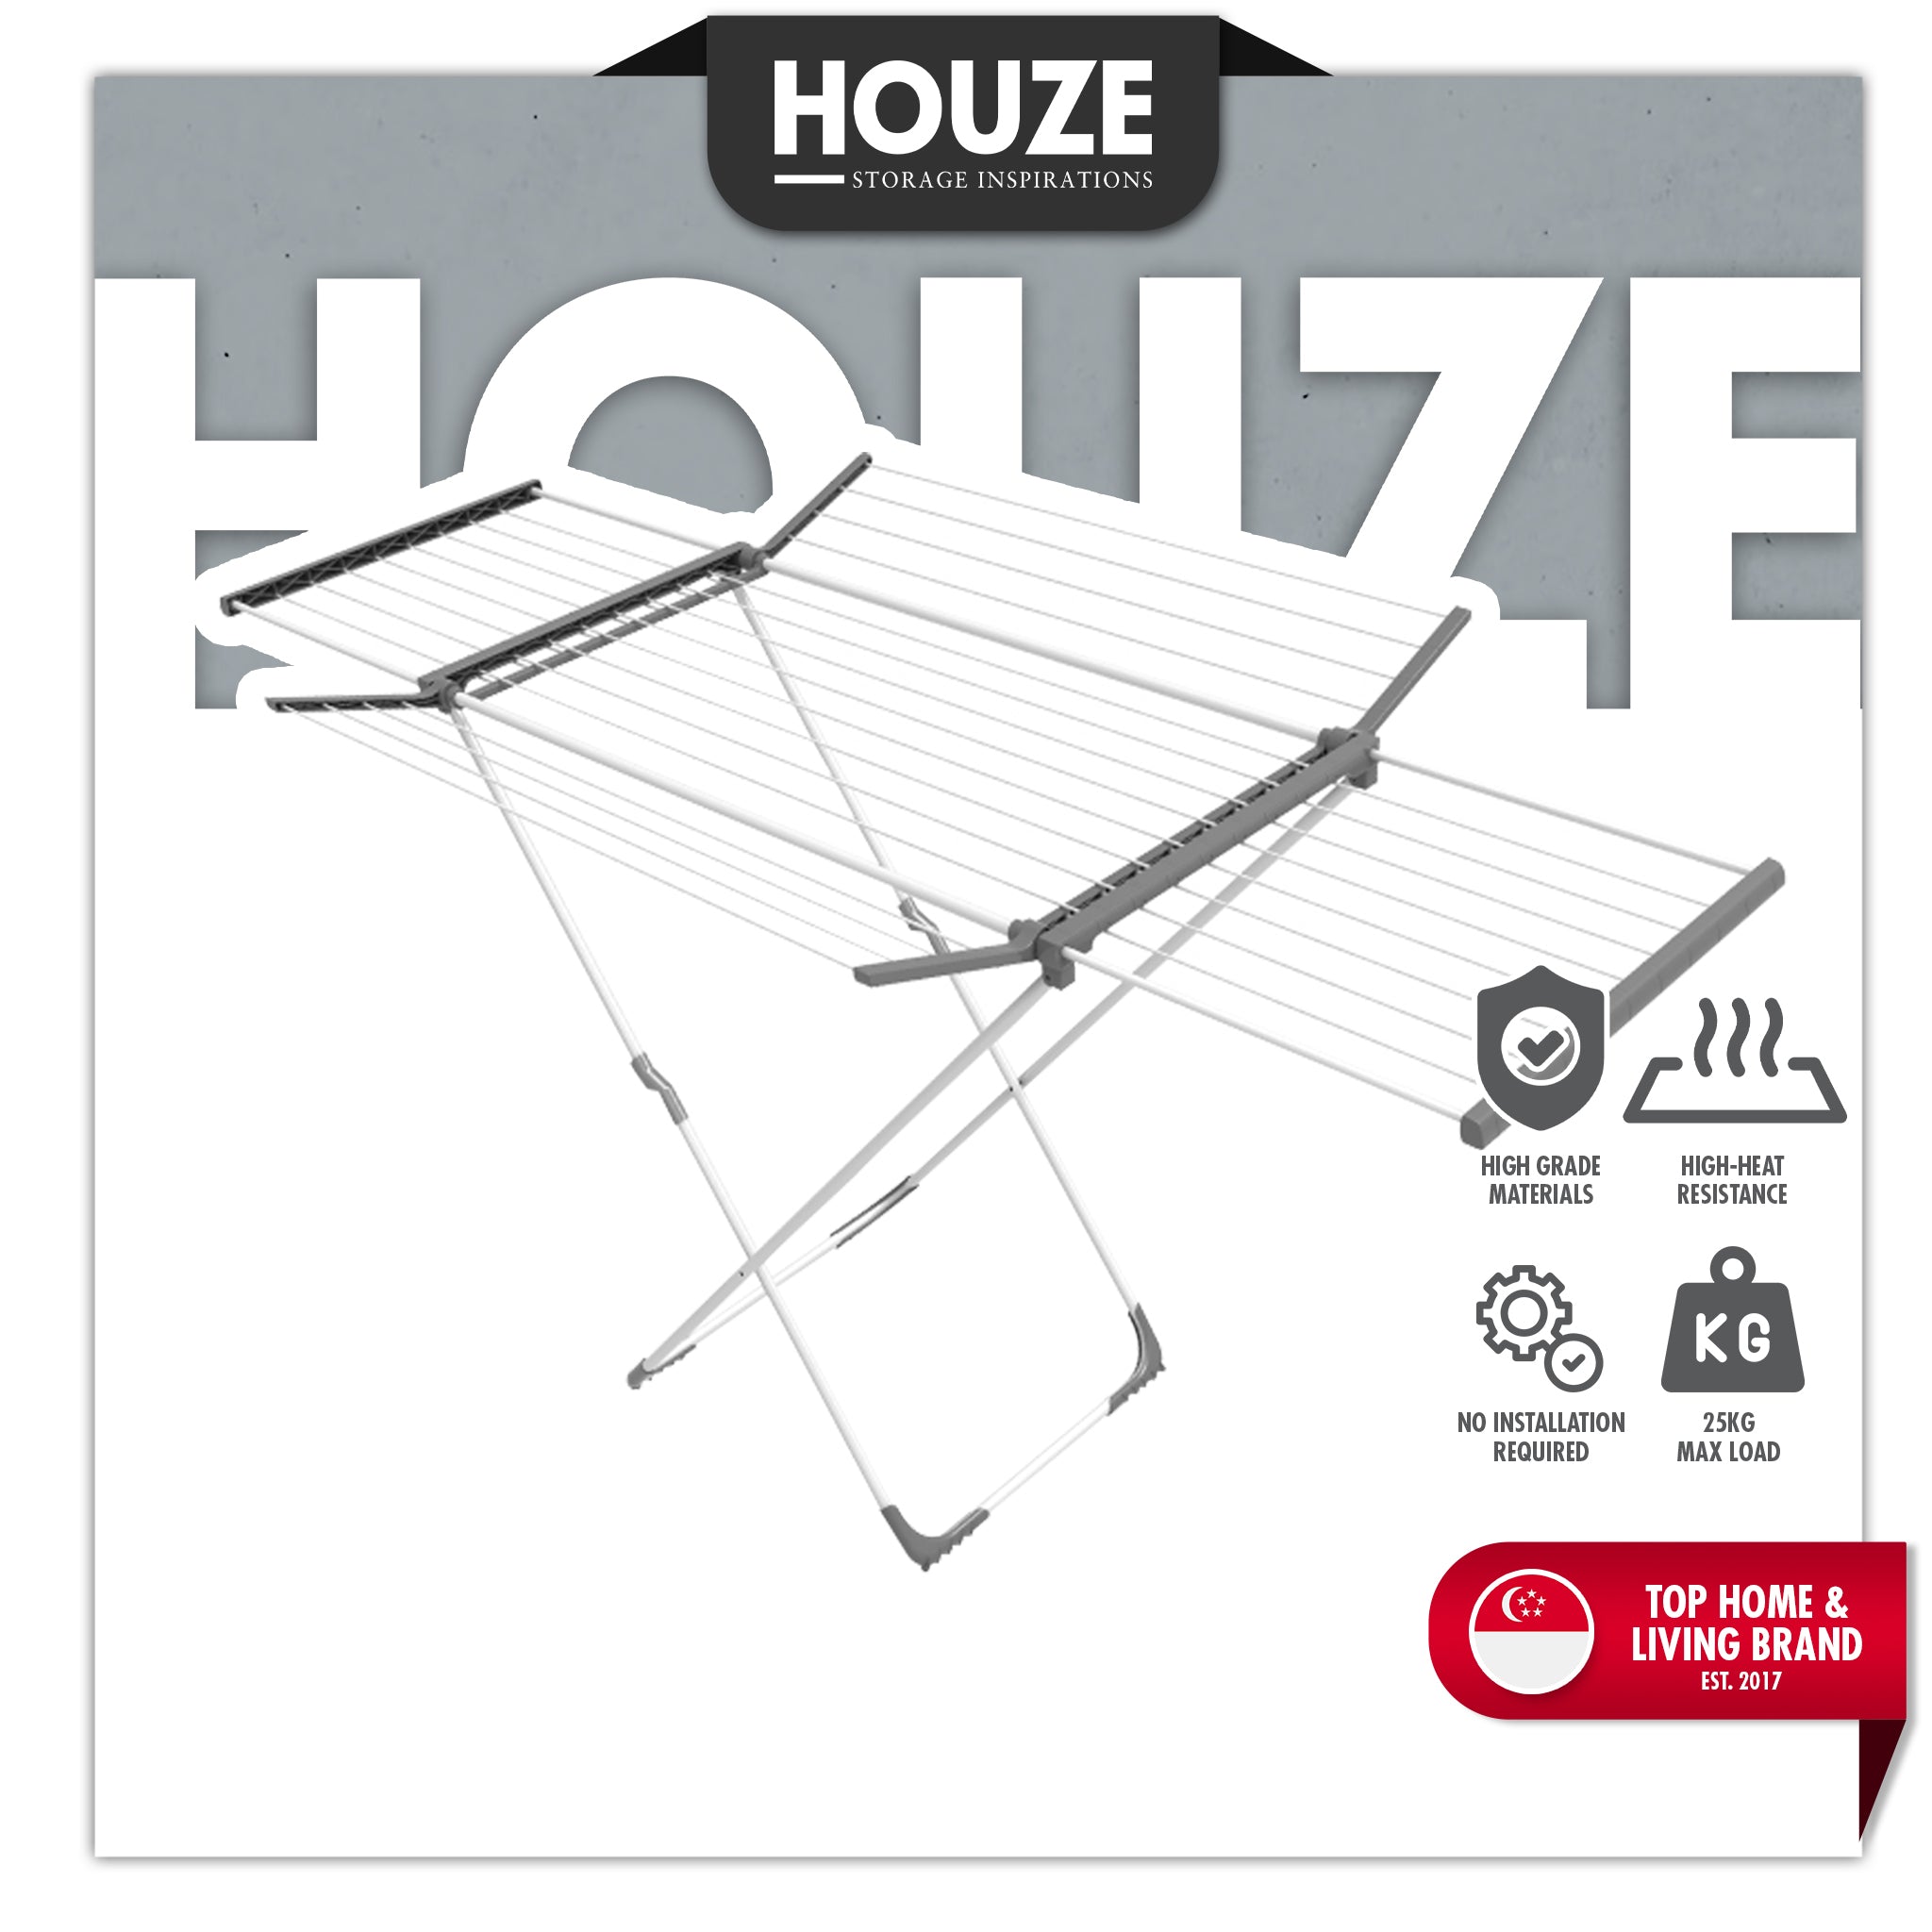 HOUZE - Krusty Extendable Drying Rack (2.5 Metre)